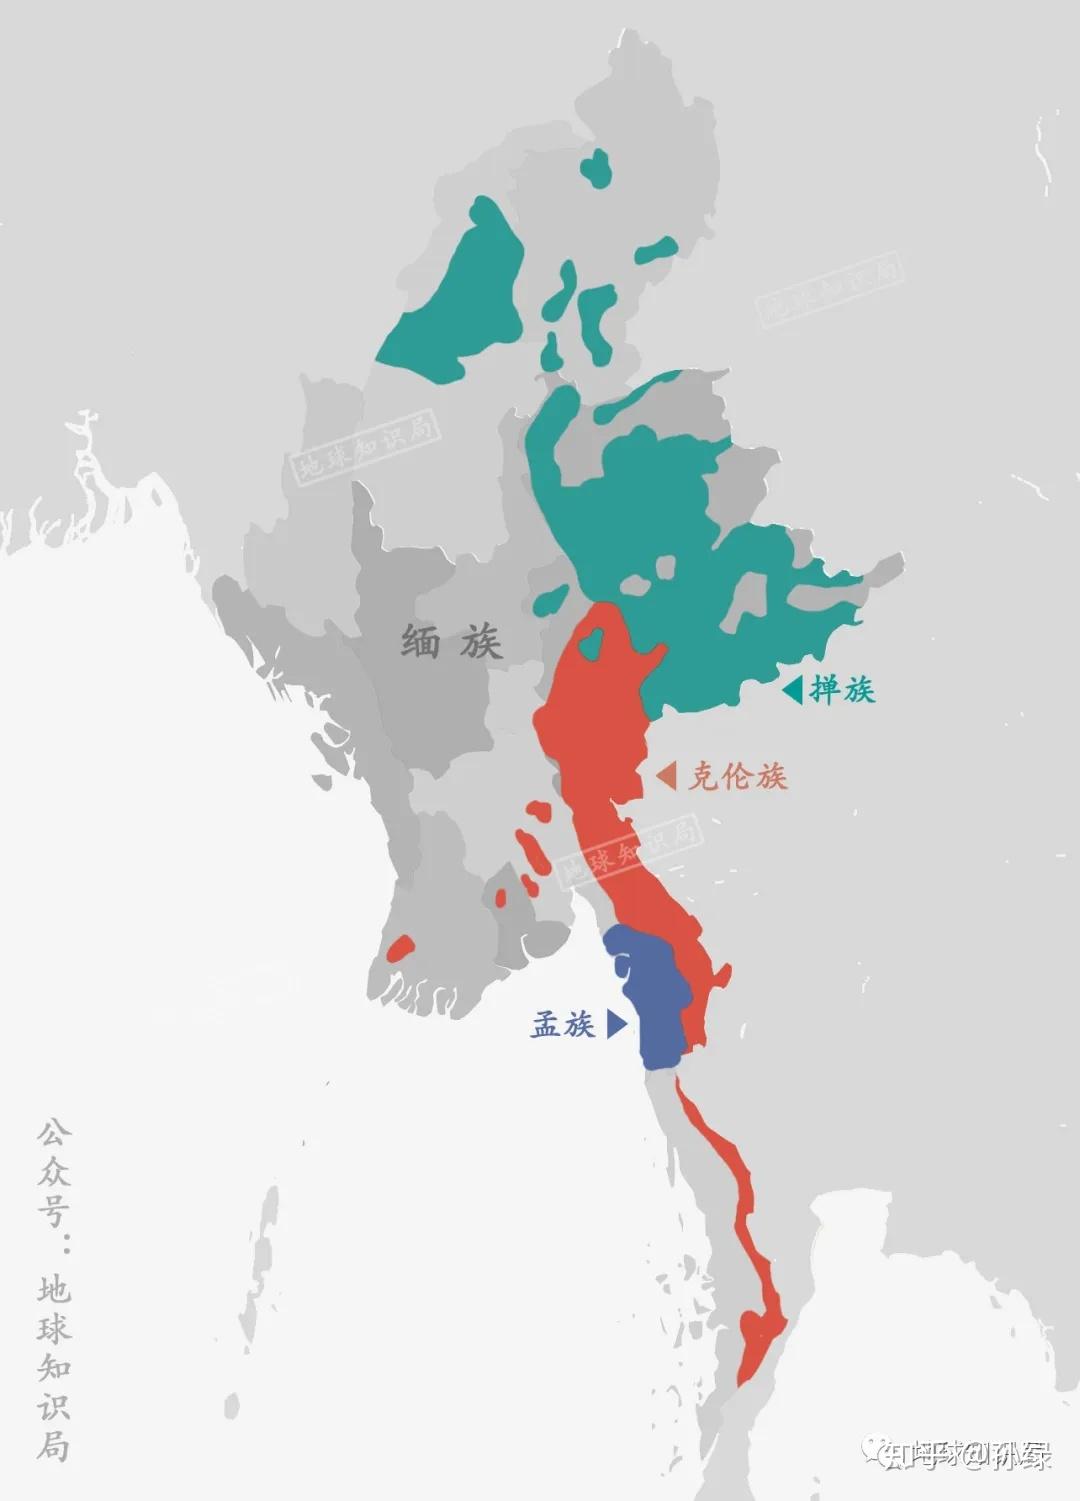 缅甸迁都的原因是什么？以及各国选择首都所在地都有哪些考量因素? - 知乎